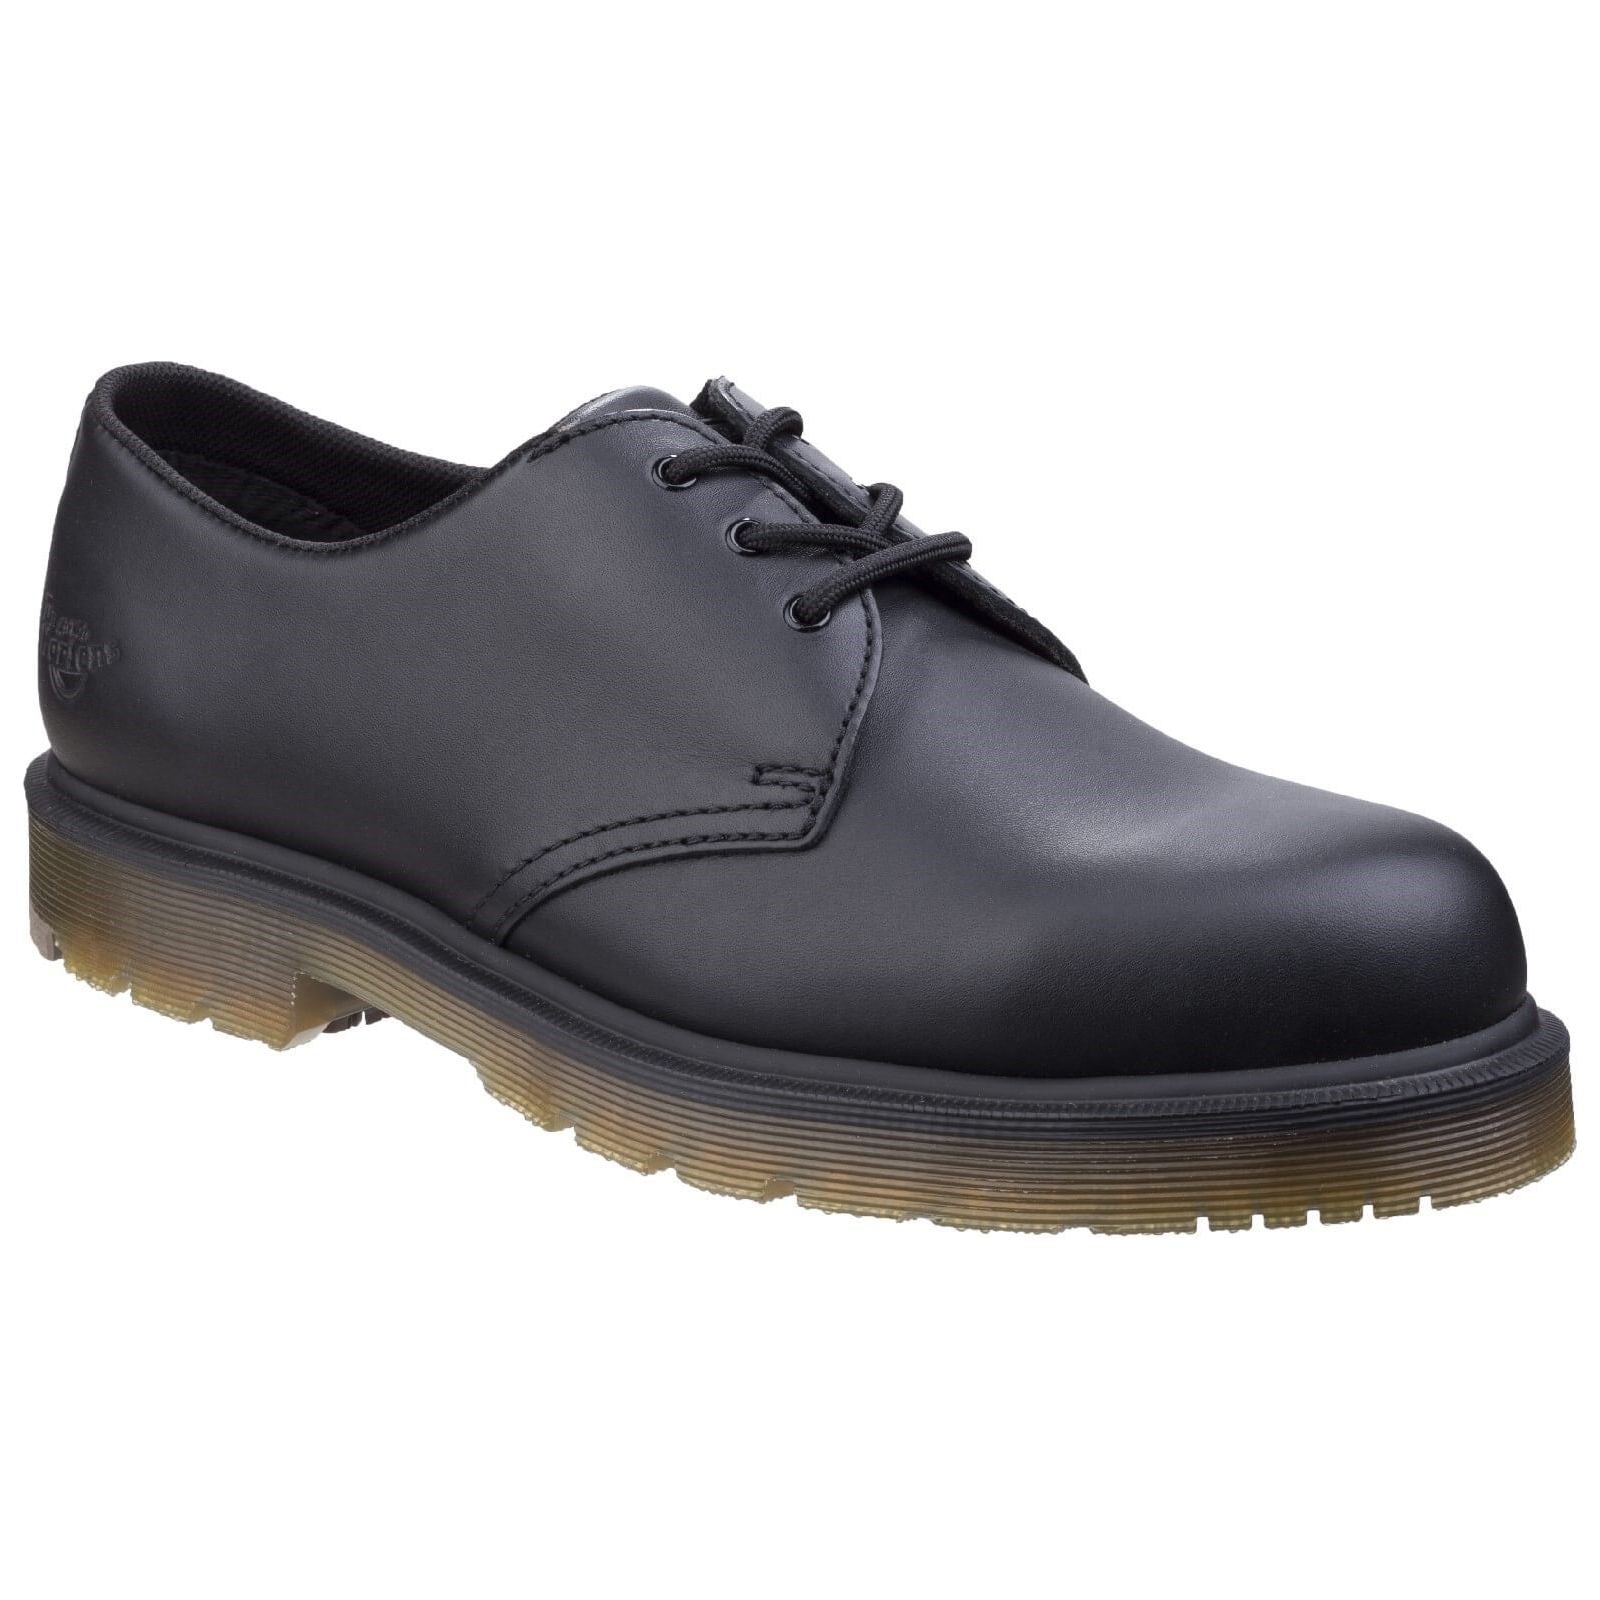 Canada tieners Uittrekken Dr Martens Arlington NS Occupational Shoes Ladies – workweargurus.com